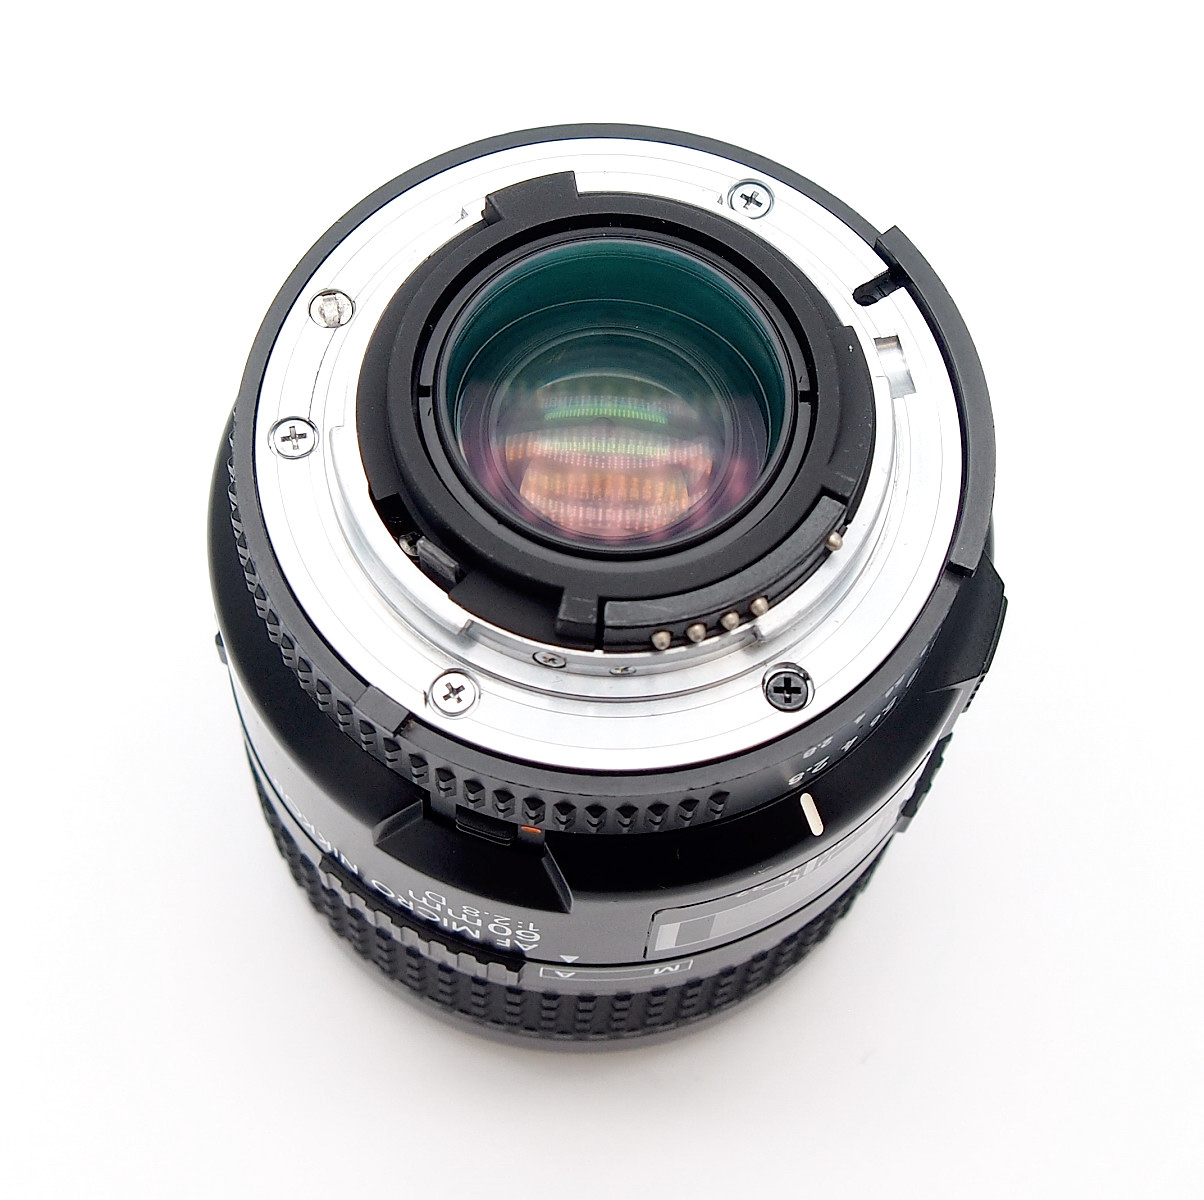 Nikon Micro-Nikkor 60mm F2.8 D AF Mount Lens, Mint & Box #8650